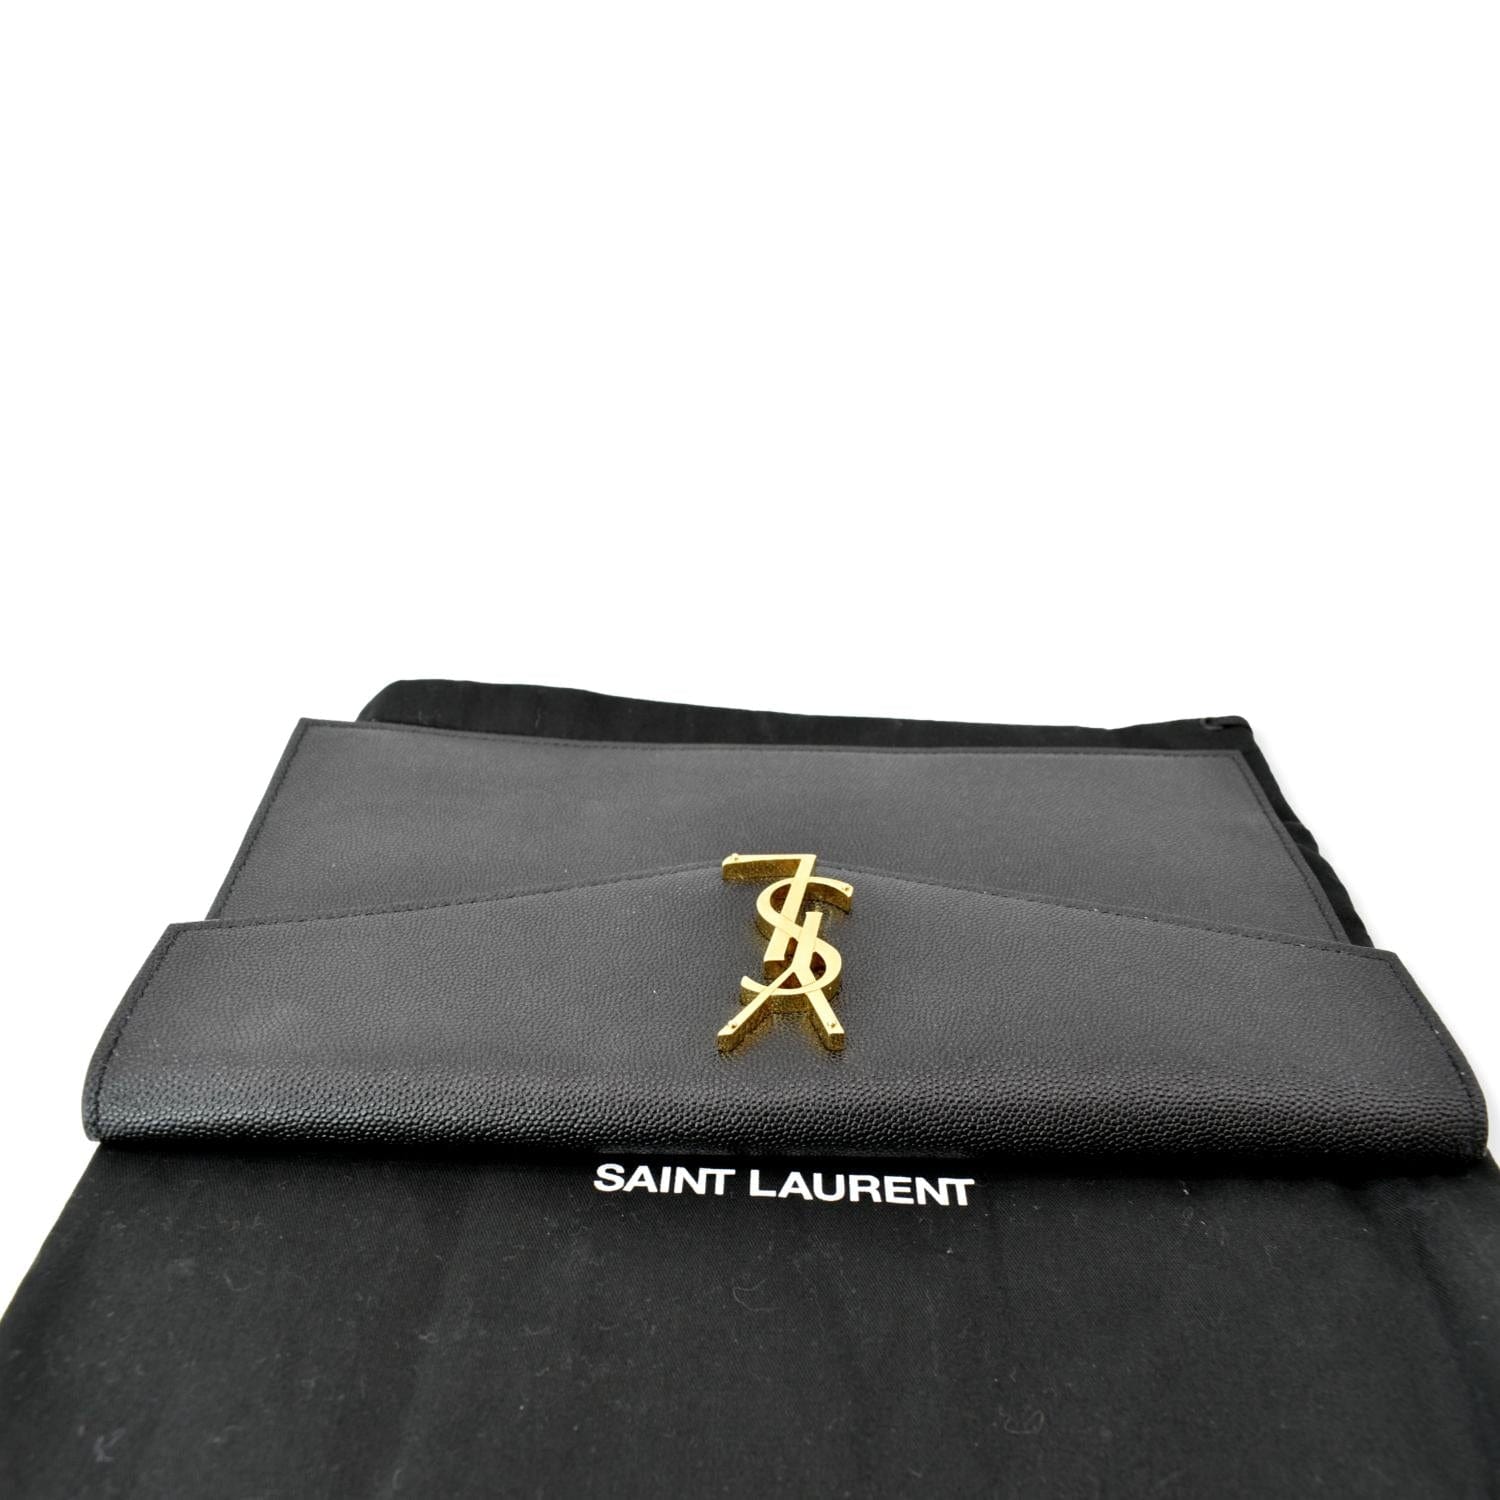 Black Uptown YSL-plaque grained-leather clutch bag, Saint Laurent